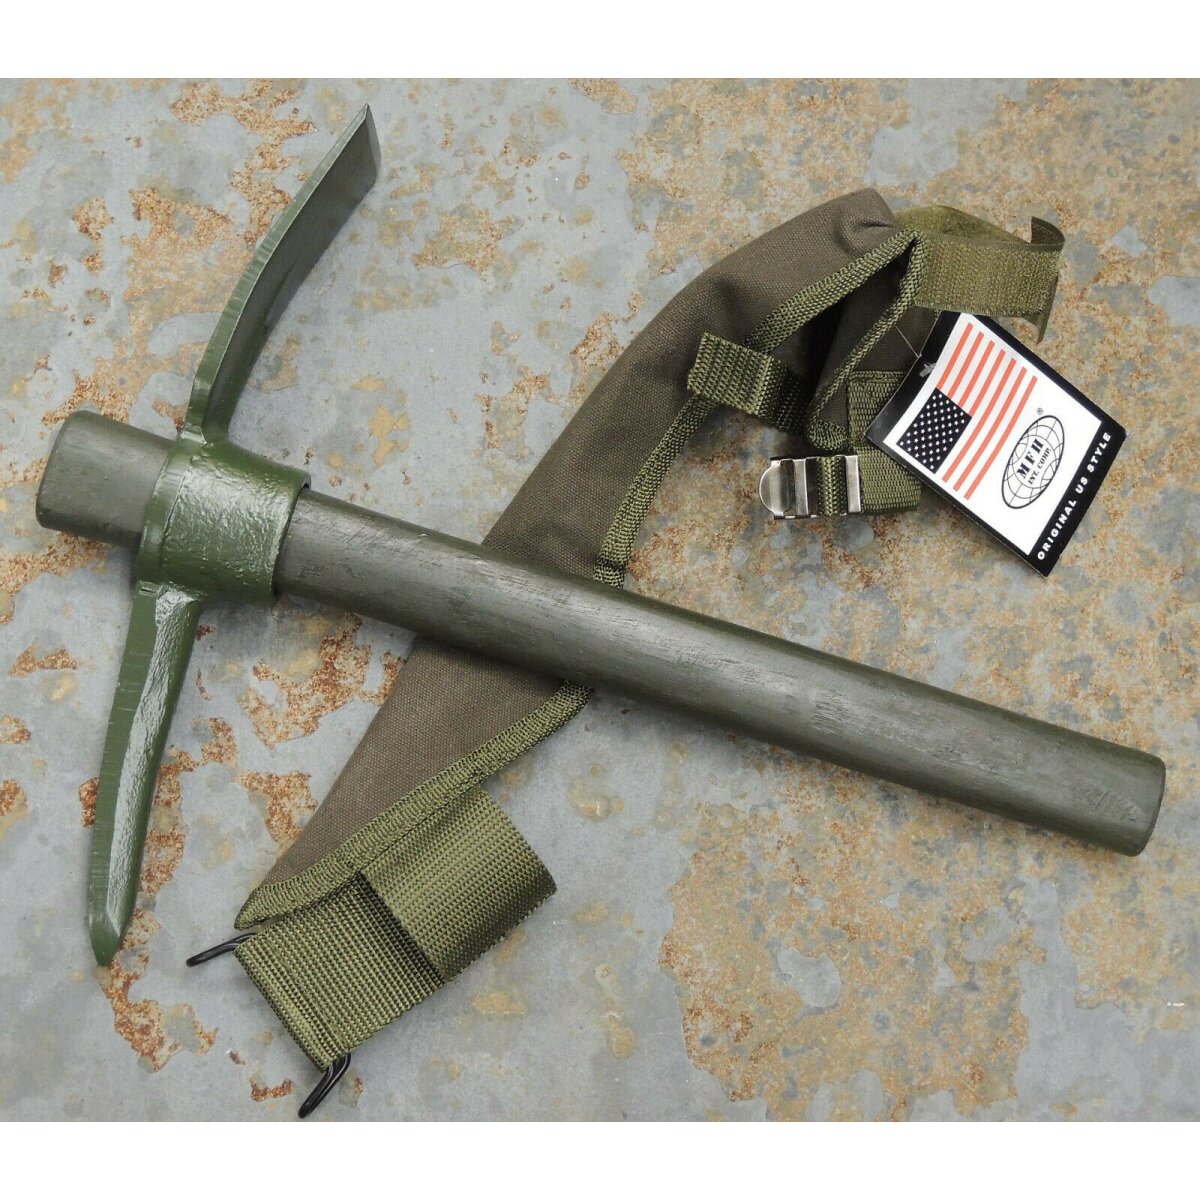 Tasche Army Outdoor Spitzhacke Flachhacke Hacke M1910 US PICKEL mit Holzstiel u